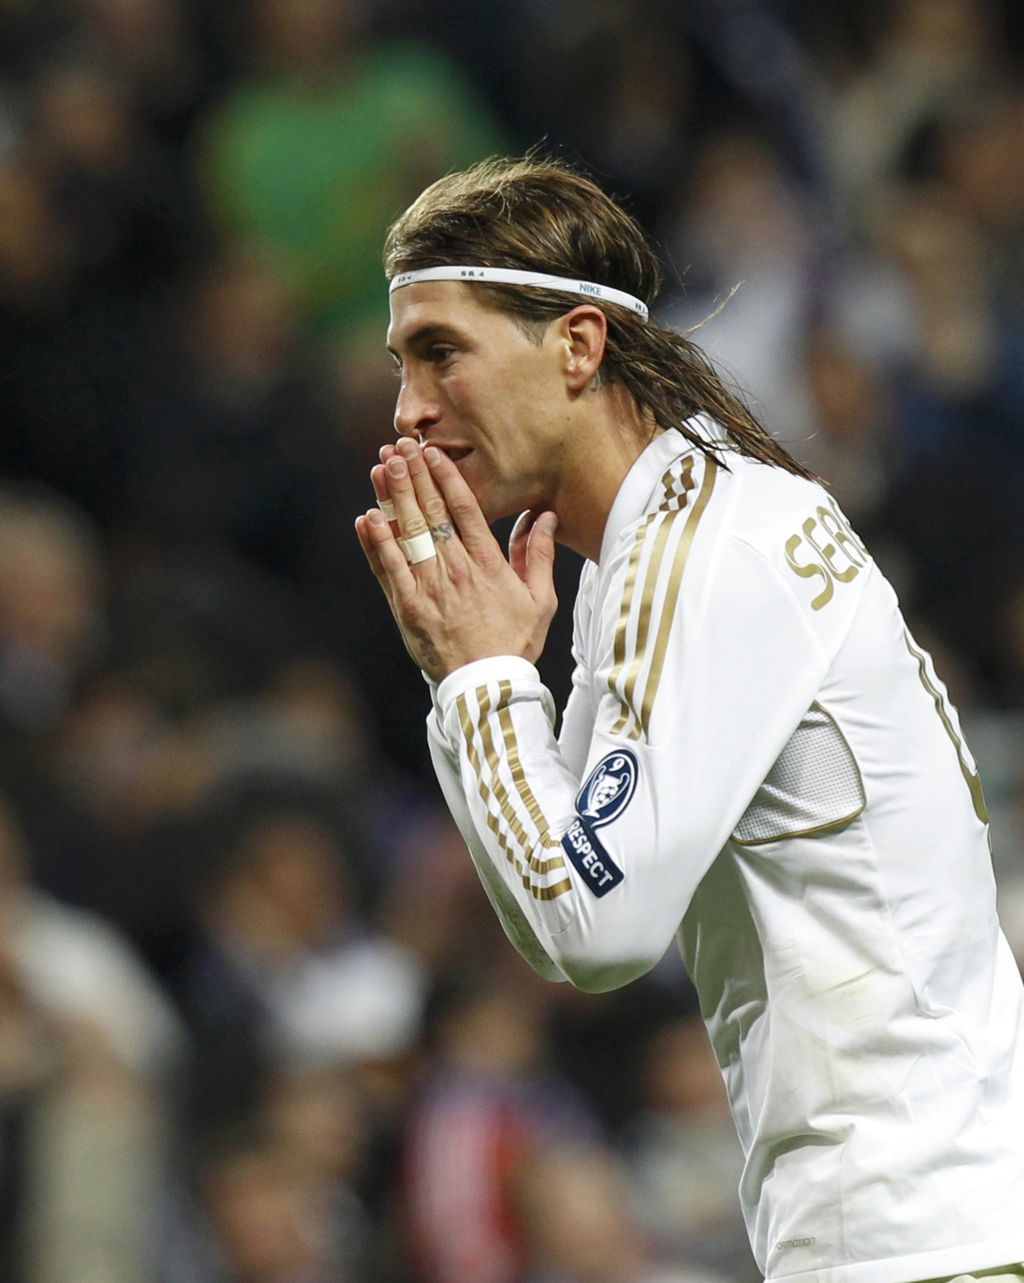 VIDEO: Kje je končala žoga, ki jo je Ramos brcnil med oblake?